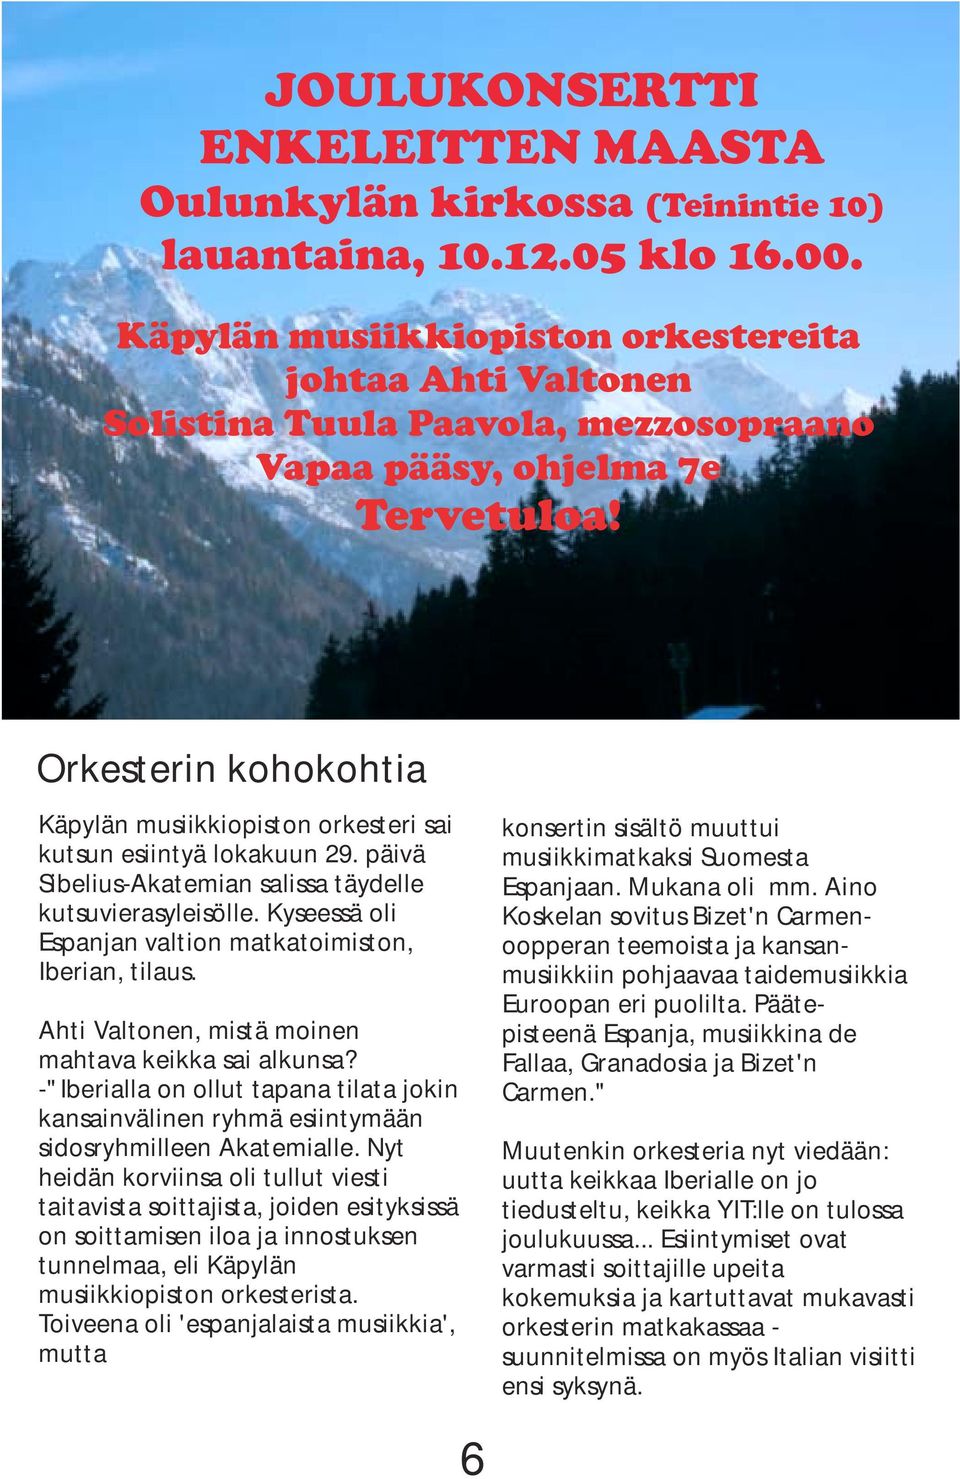 Orkesterin kohokohtia Käpylän musiikkiopiston orkesteri sai kutsun esiintyä lokakuun 29. päivä Sibelius-Akatemian salissa täydelle kutsuvierasyleisölle.